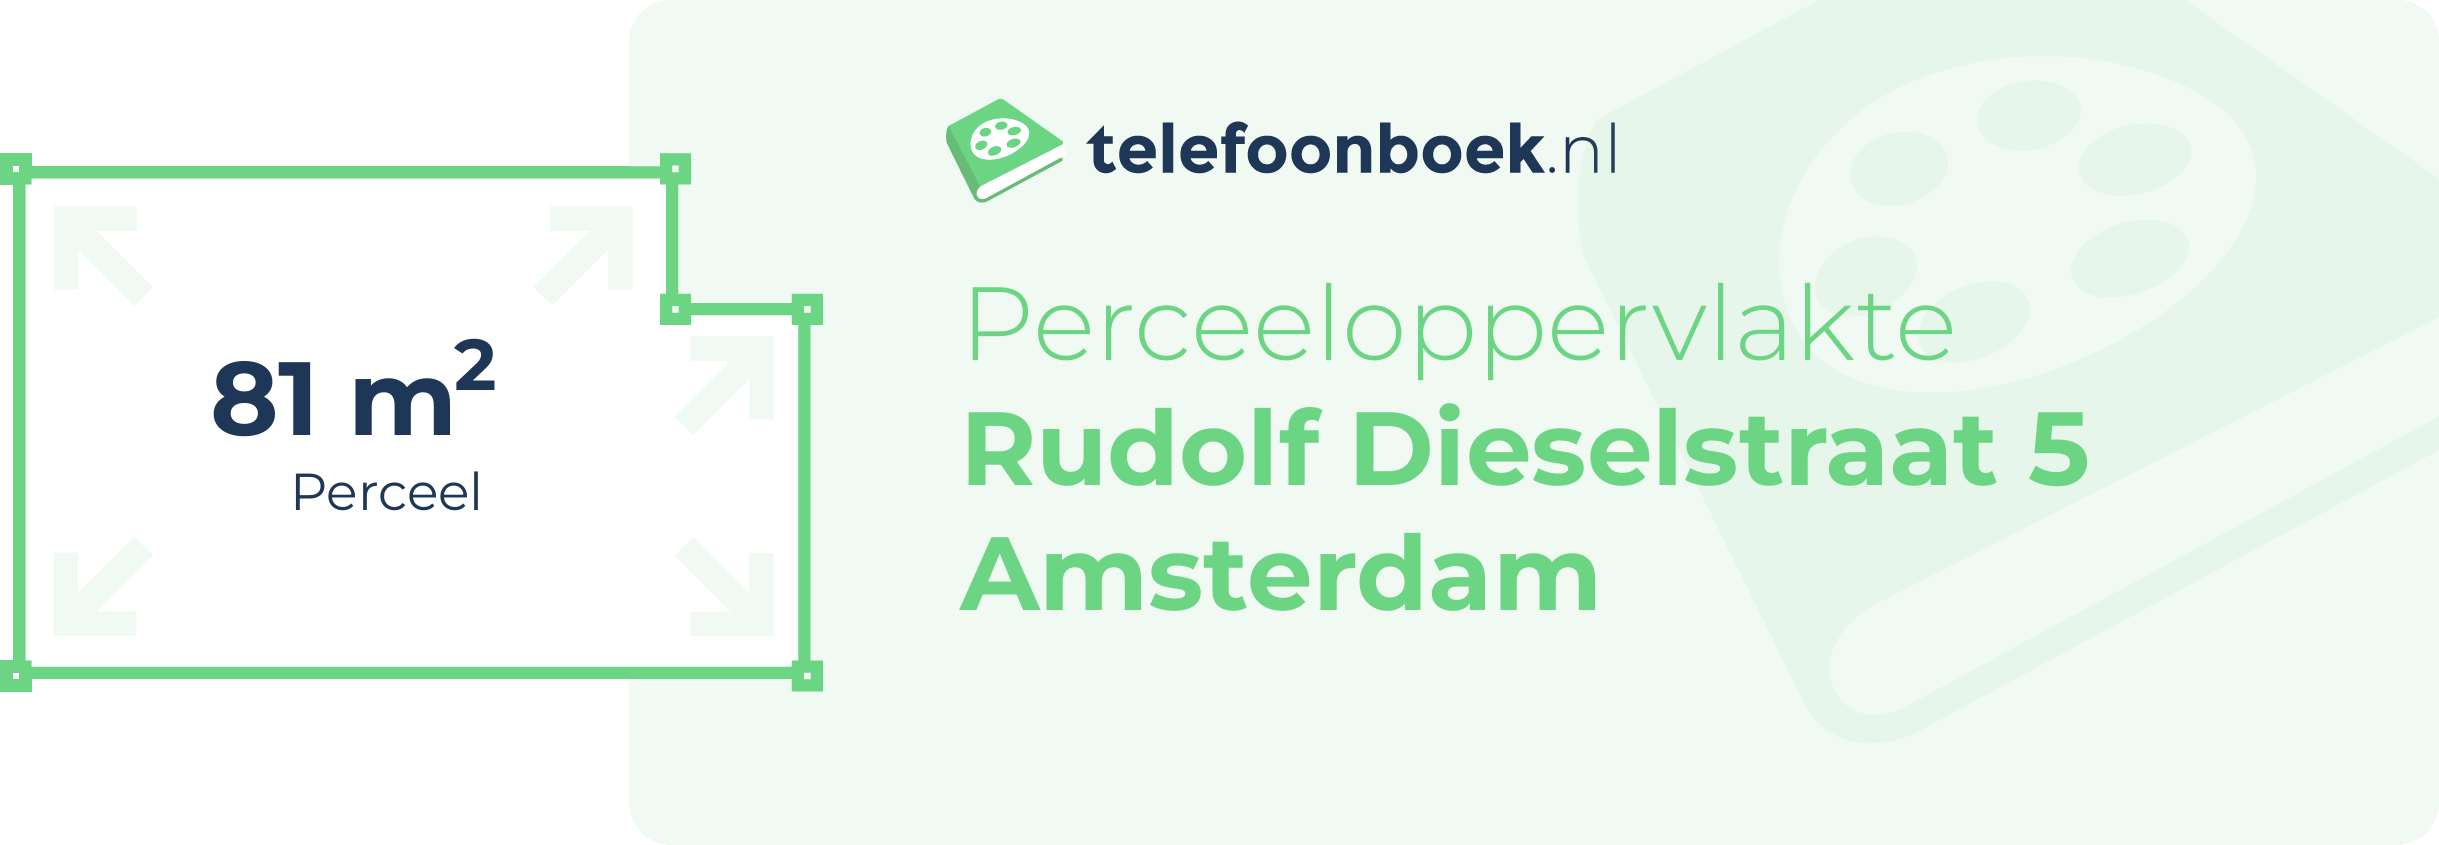 Perceeloppervlakte Rudolf Dieselstraat 5 Amsterdam